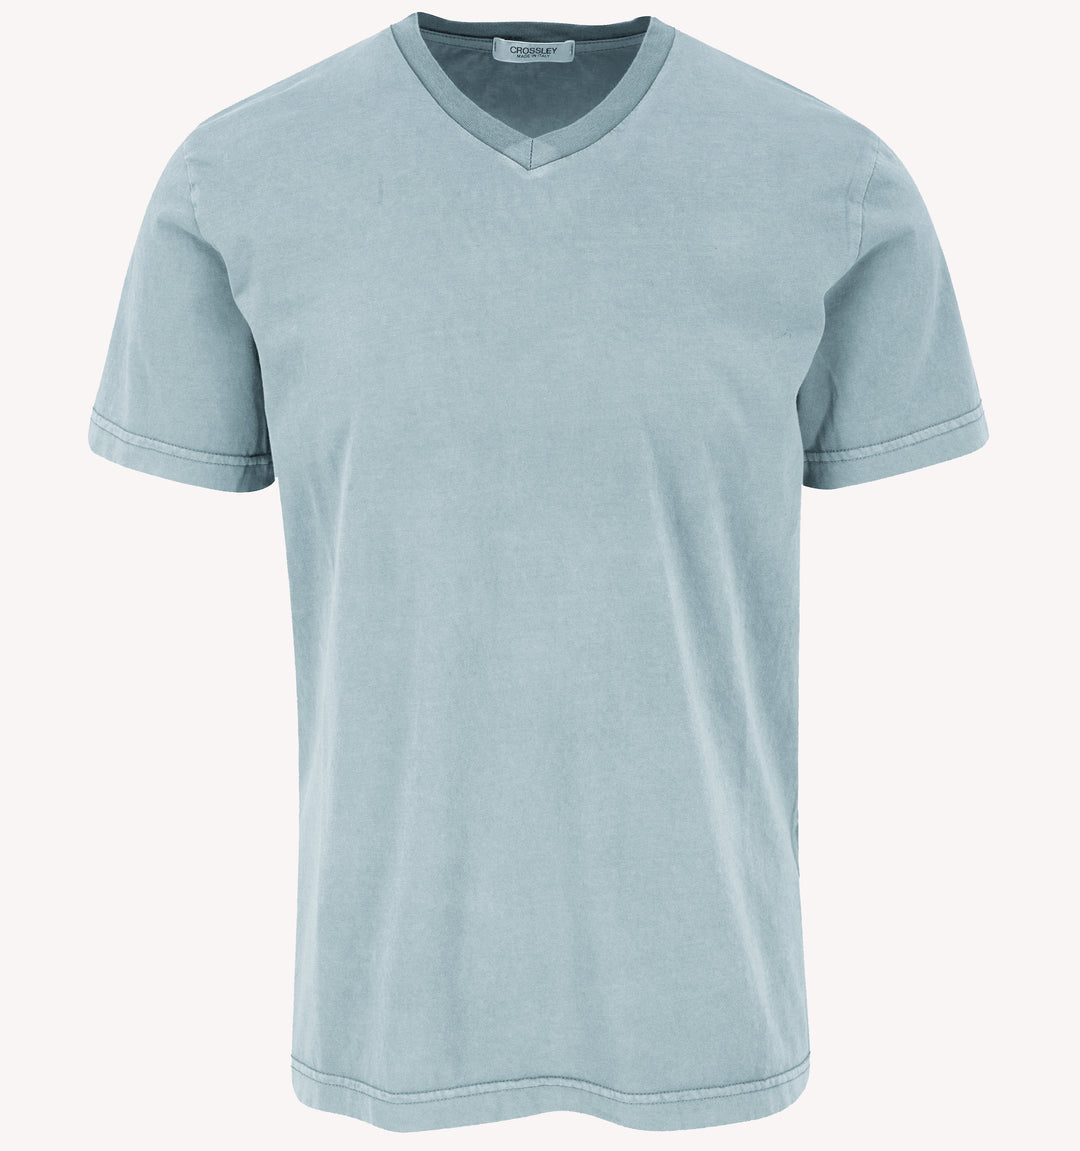 Crossley V-Neck T-Shirt in Light Blue